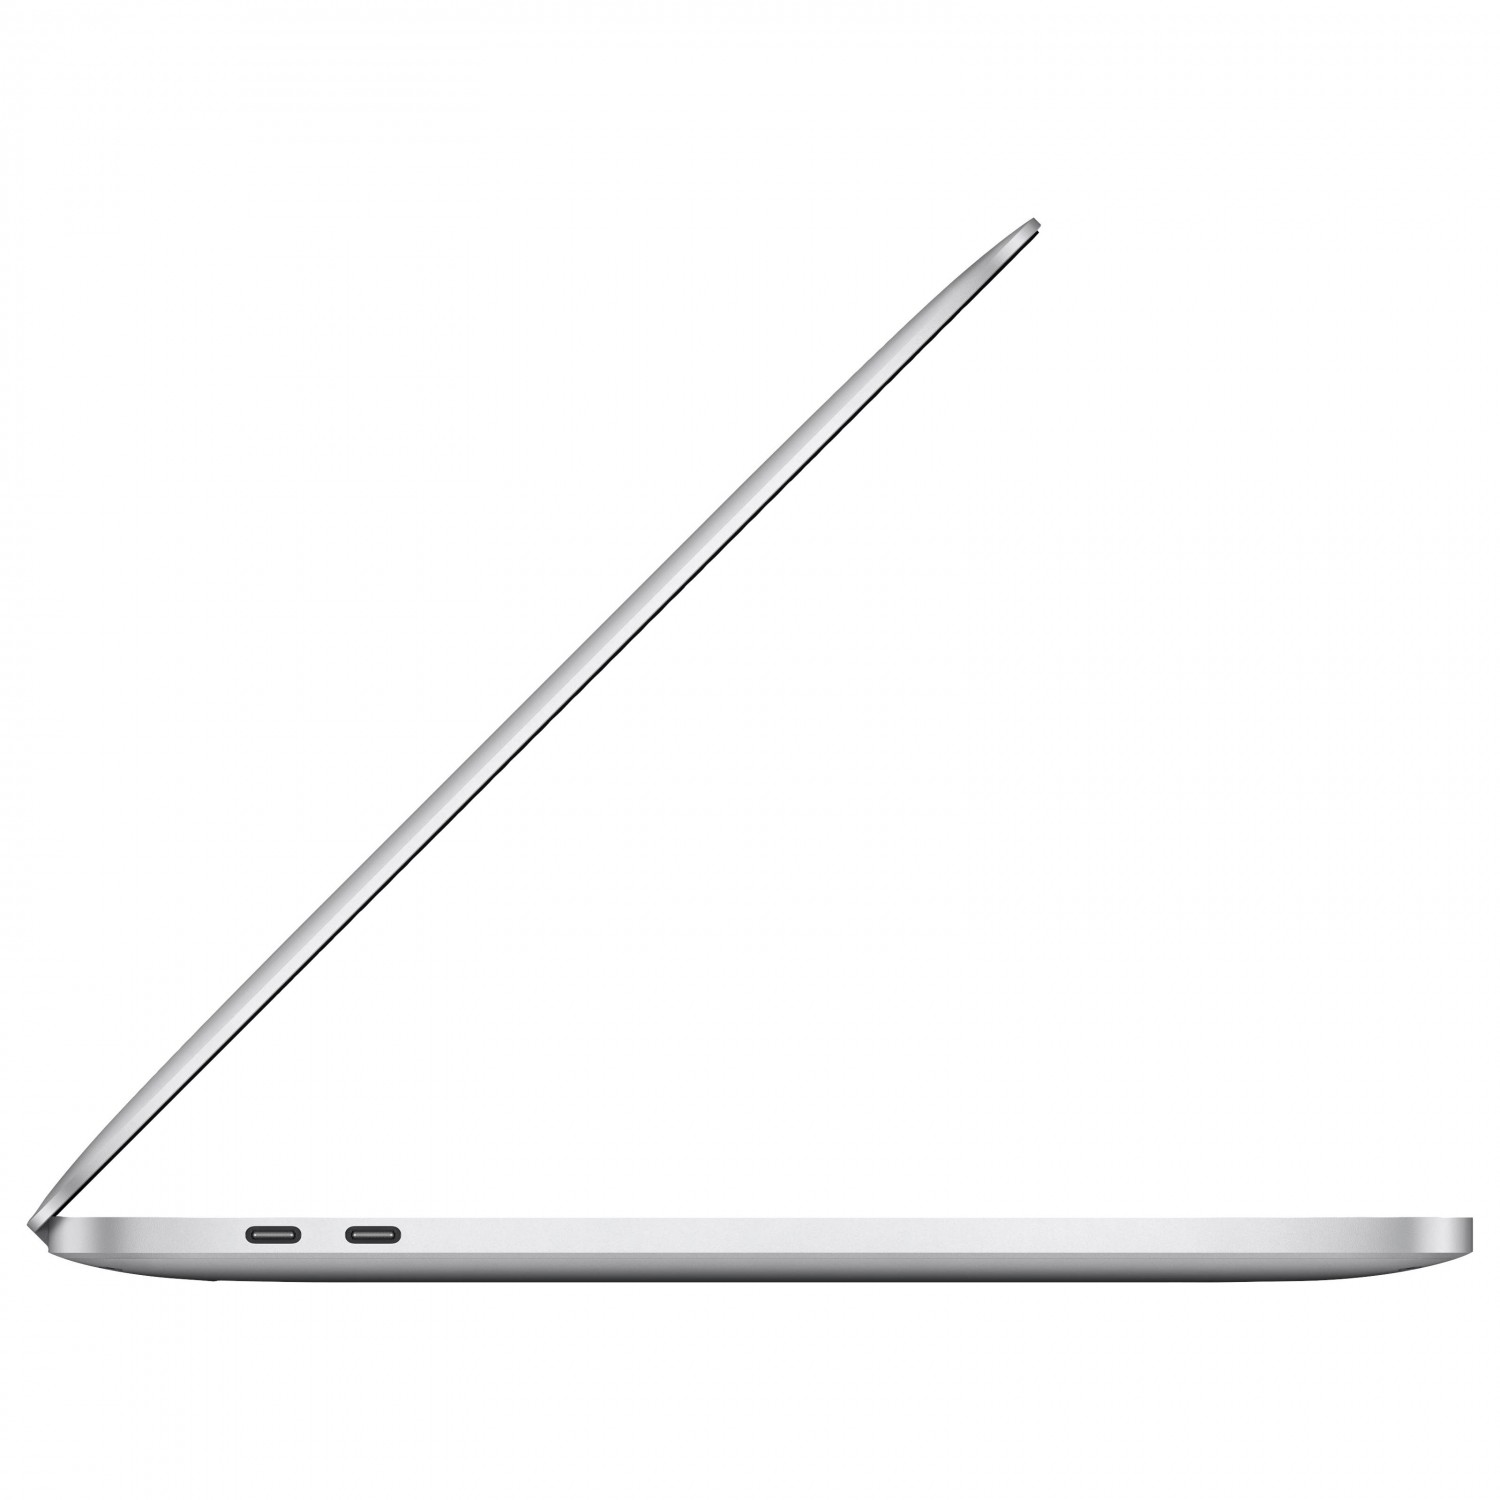 لپ تاپ Apple MacBook Pro 13 2020 CTO - Silver - F-4